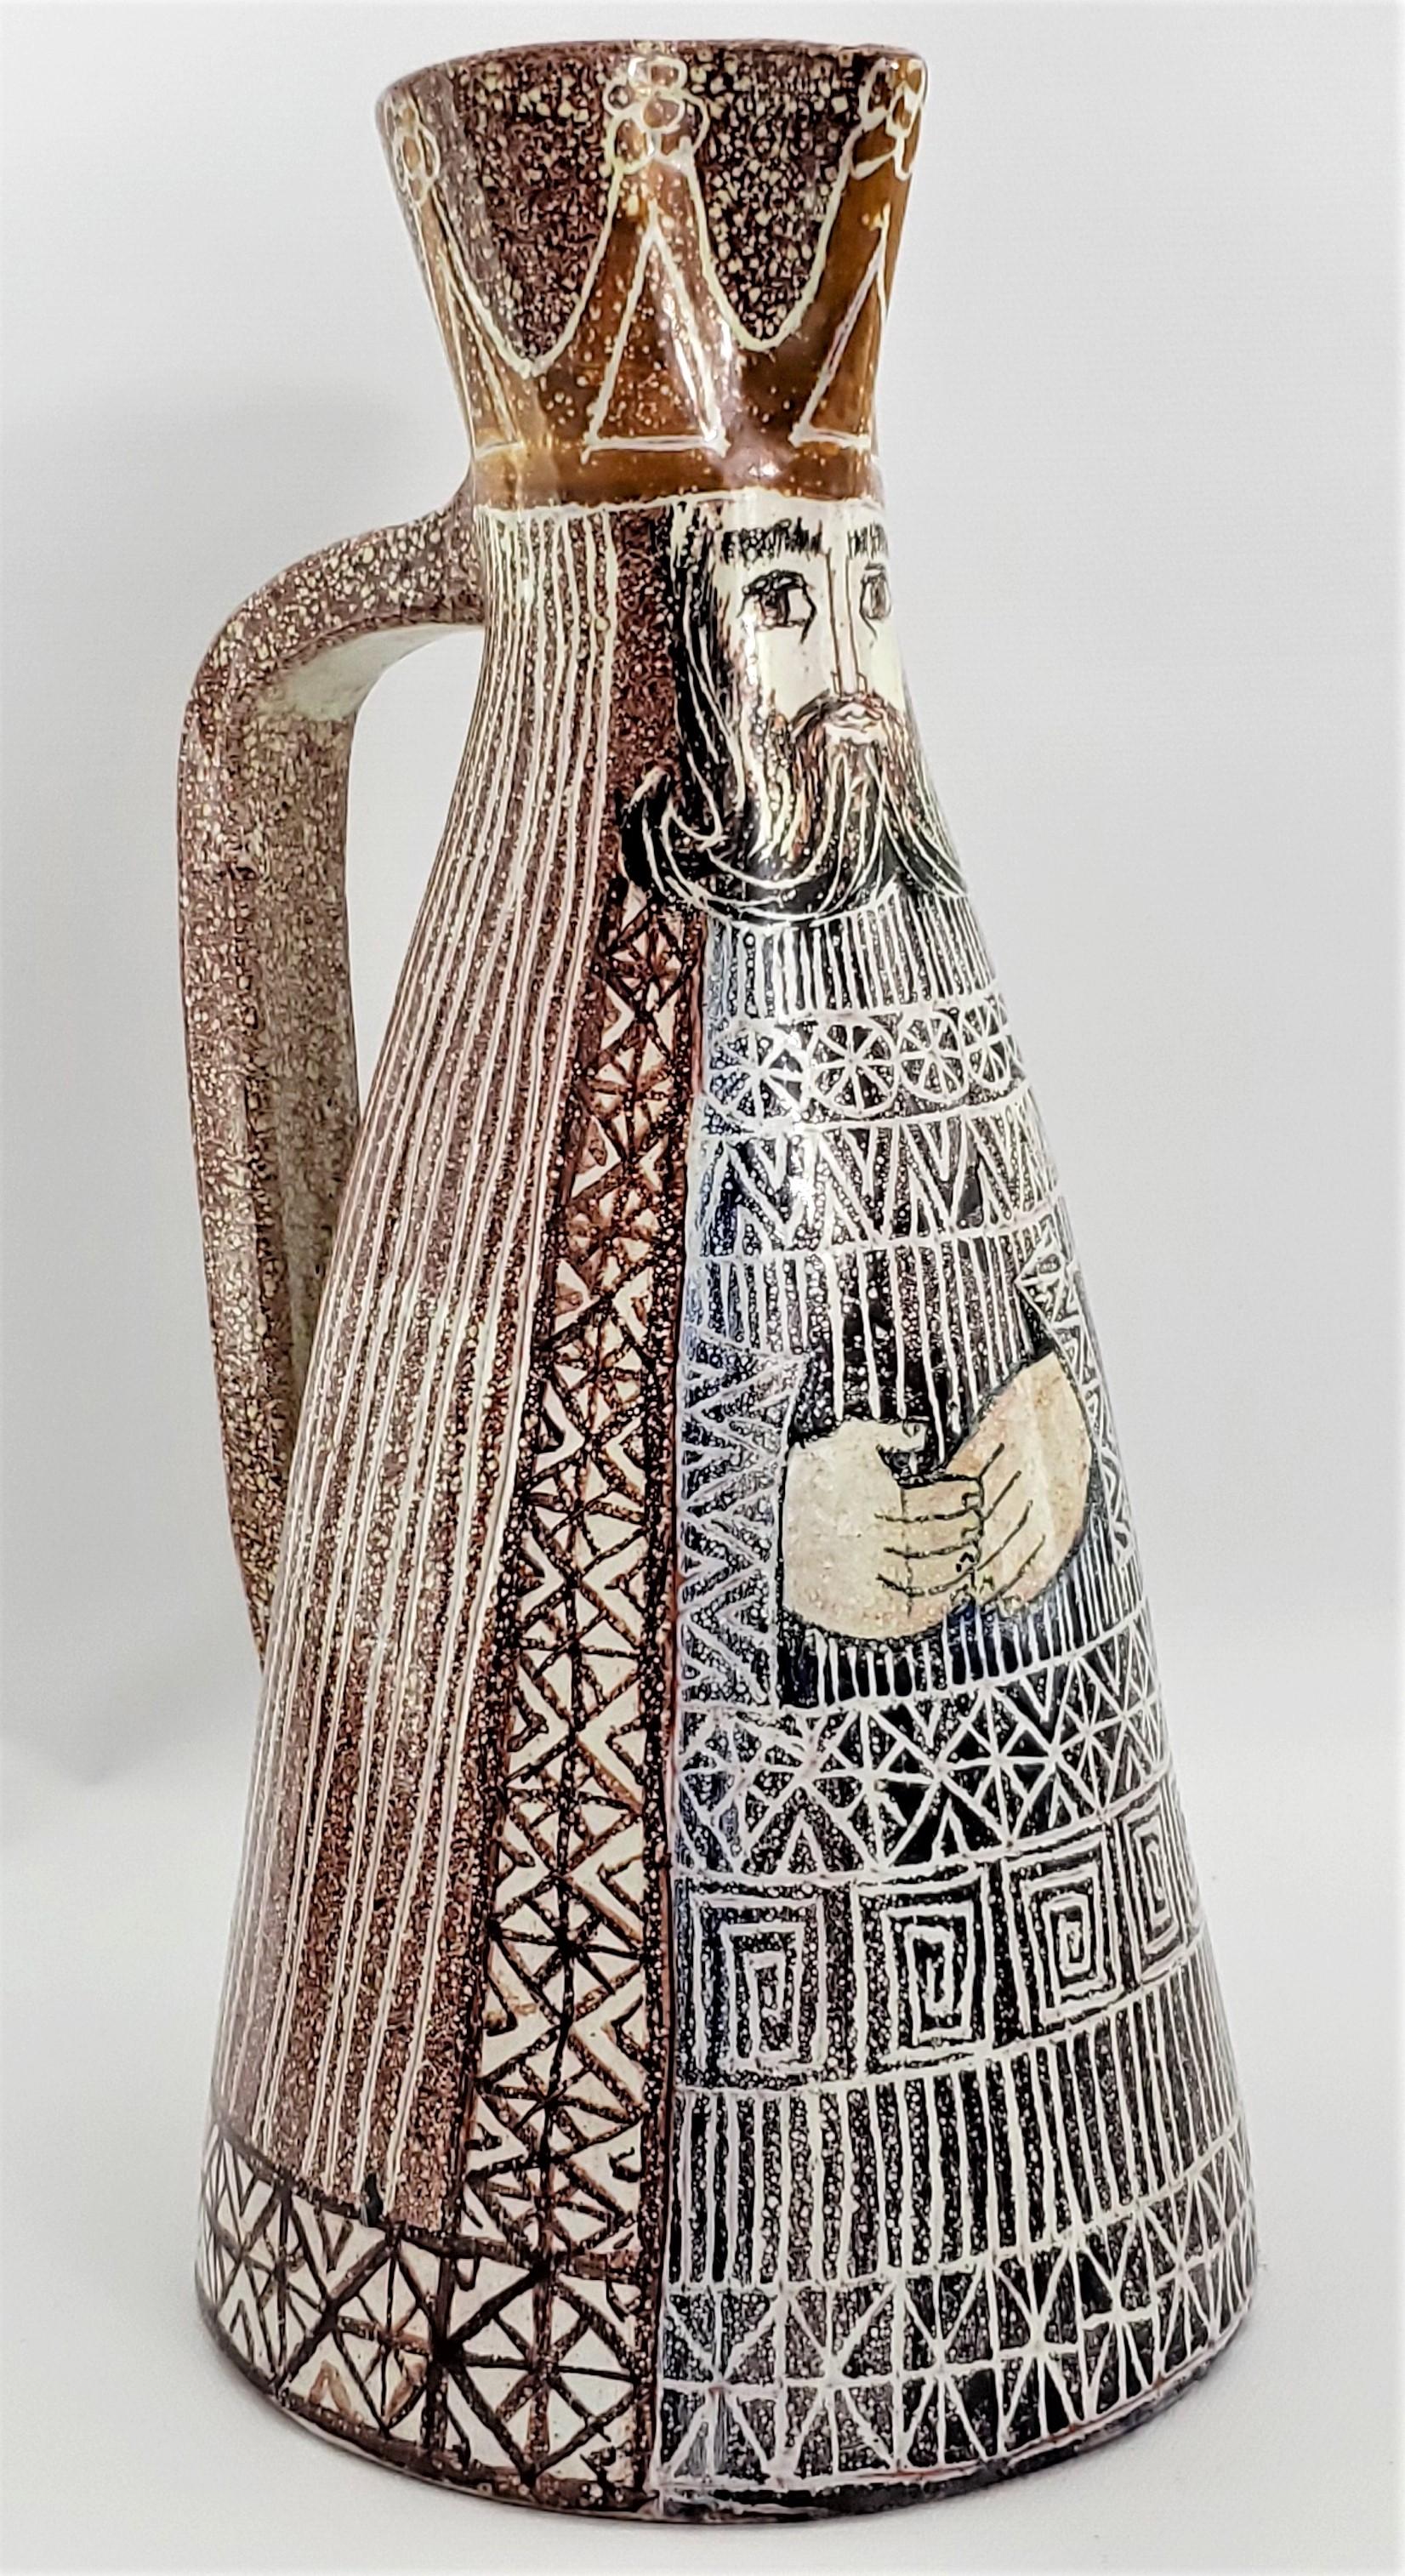 Remarquable pichet décoratif Alfaraz conçu par les artistes céramistes espagnols renommés : Miguel DURAN-LORIGA et Jesus MARTITEGUI, vers les années 1960. Ce lanceur particulier n'a jamais été utilisé et est considéré comme 